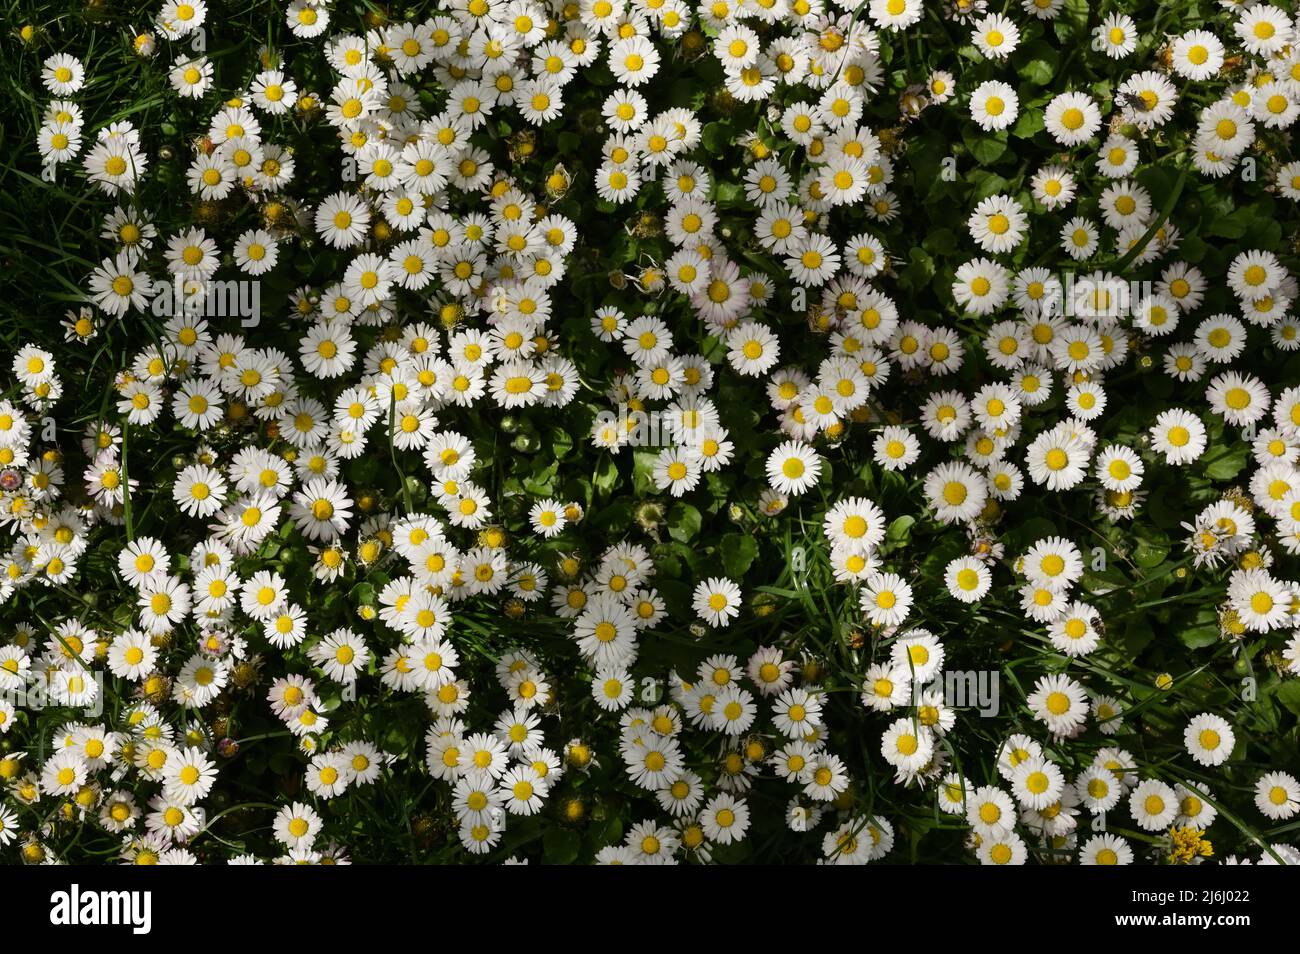 Closeup Annual Daisies (Bellis Annua) In A Meadow Stock Photo